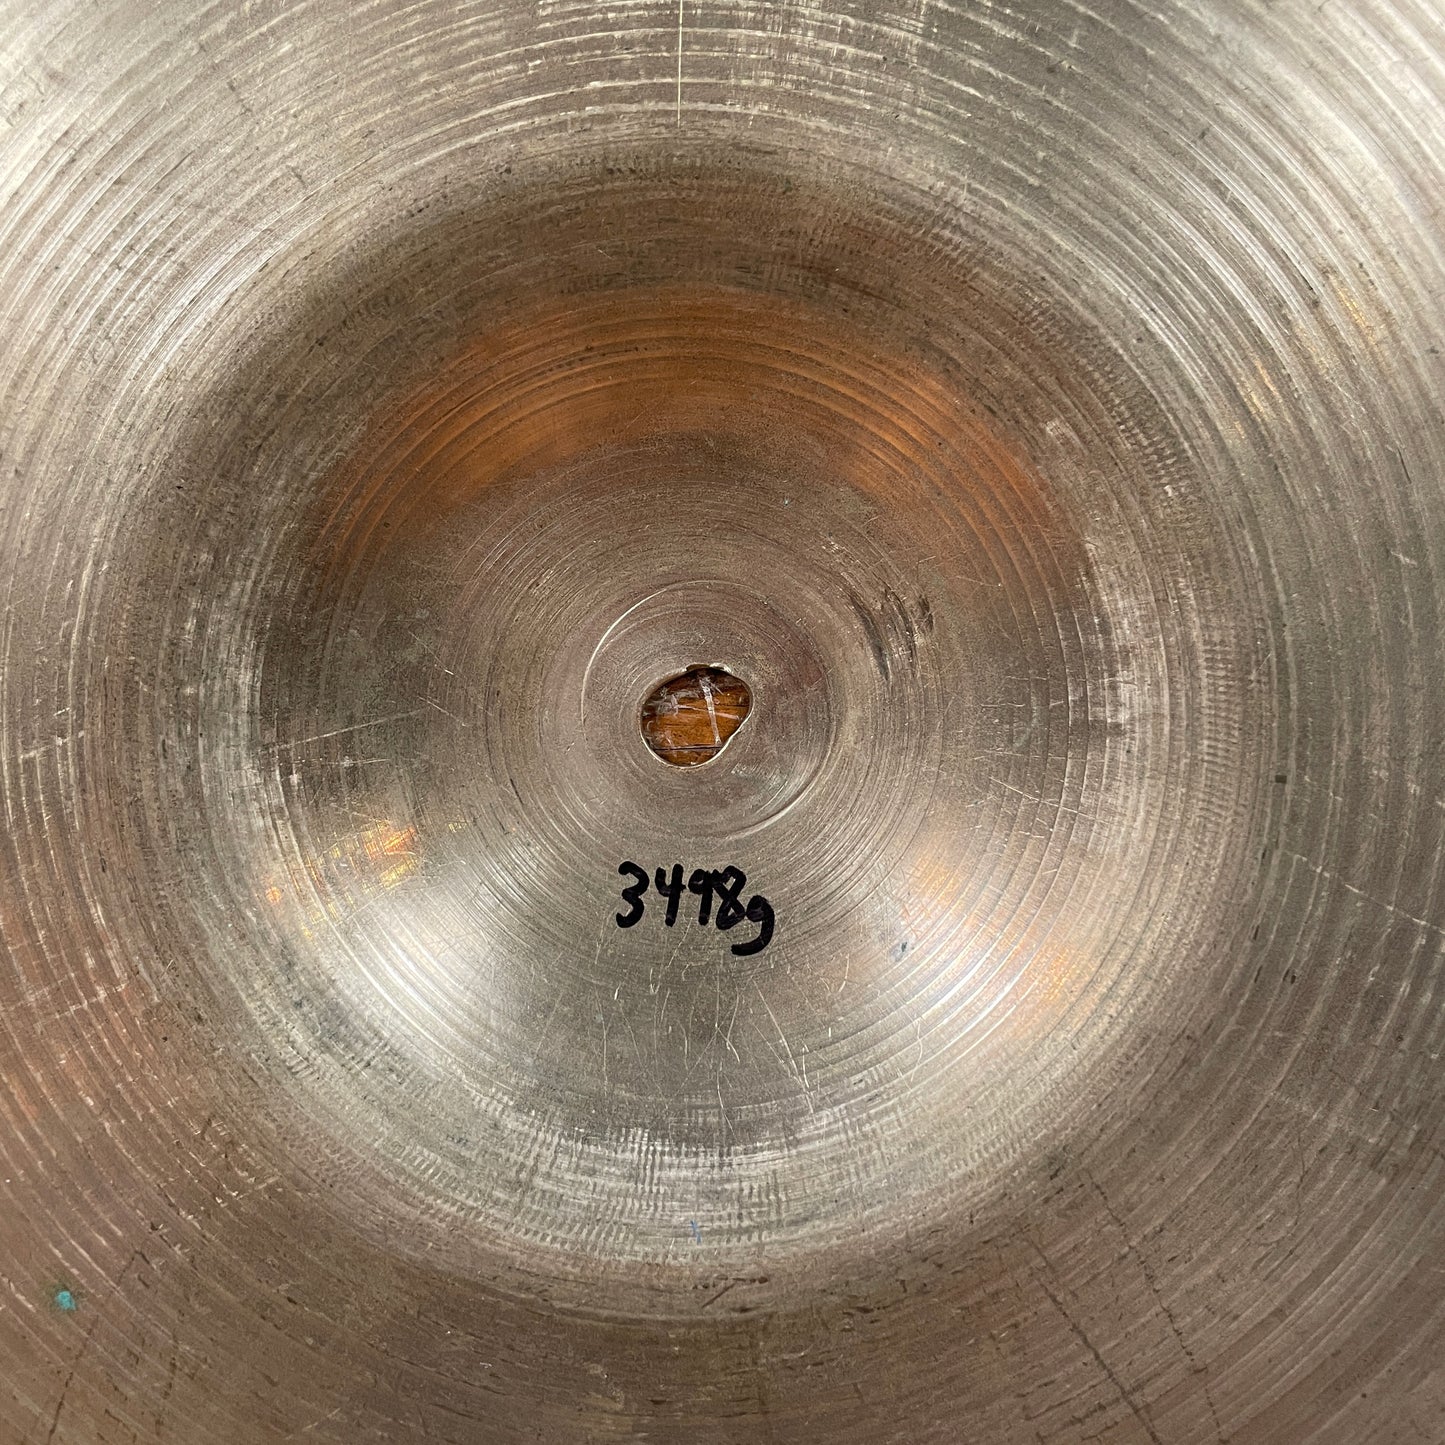 22" Zildjian A 1960s Ride Cymbal 3498g *Video Demo*